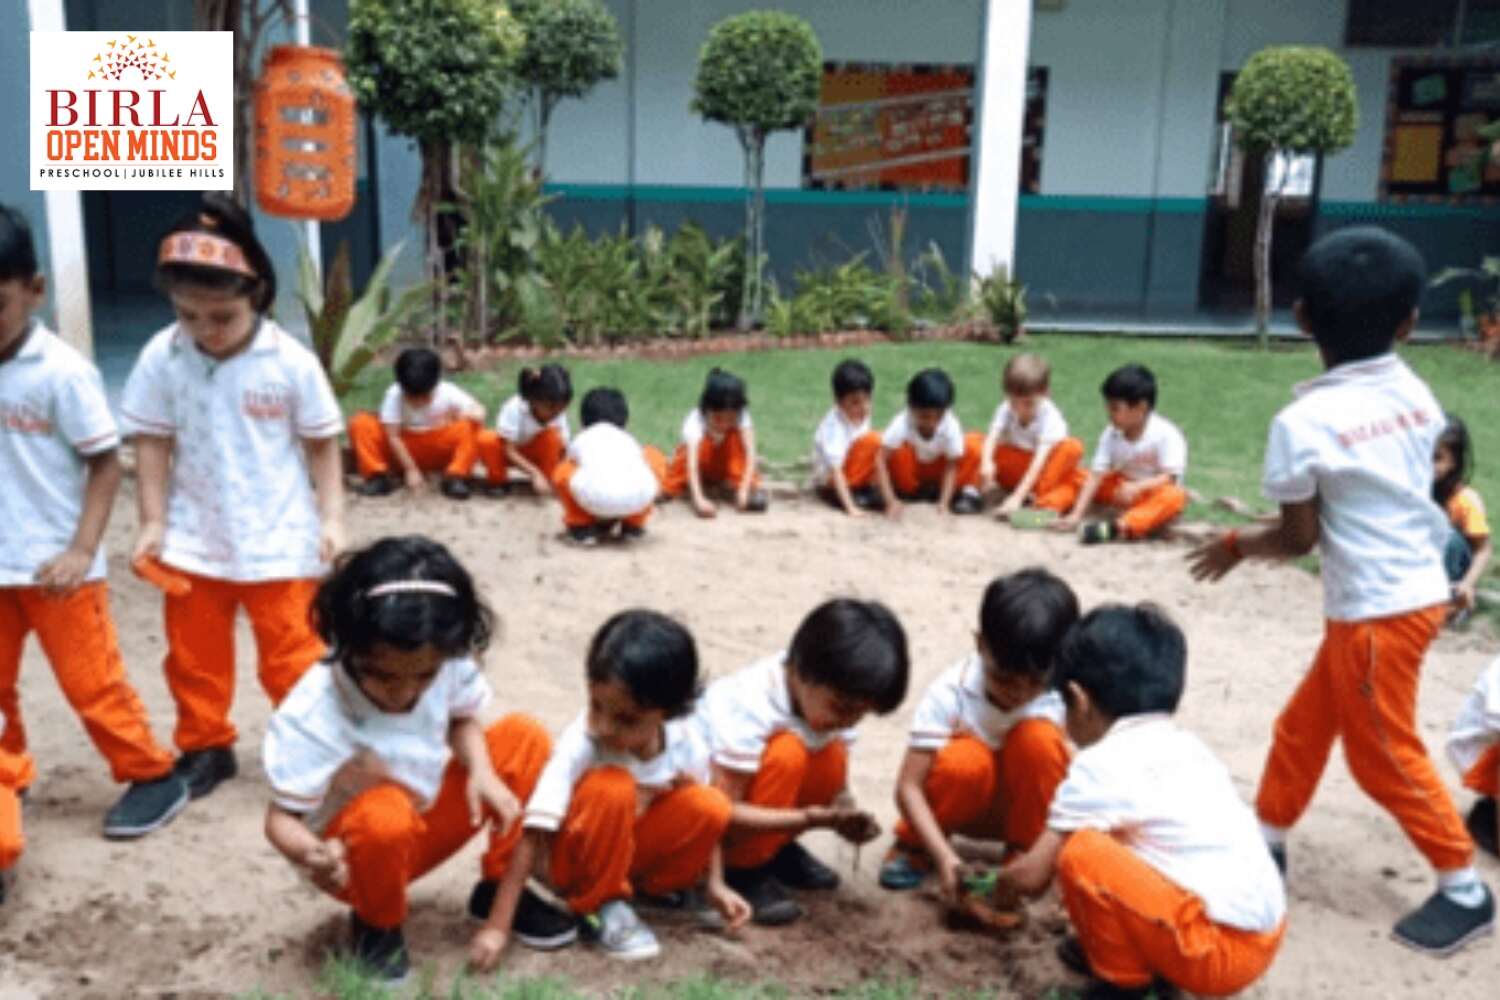 Birla Open Minds Preschool (Jubilee Hills)